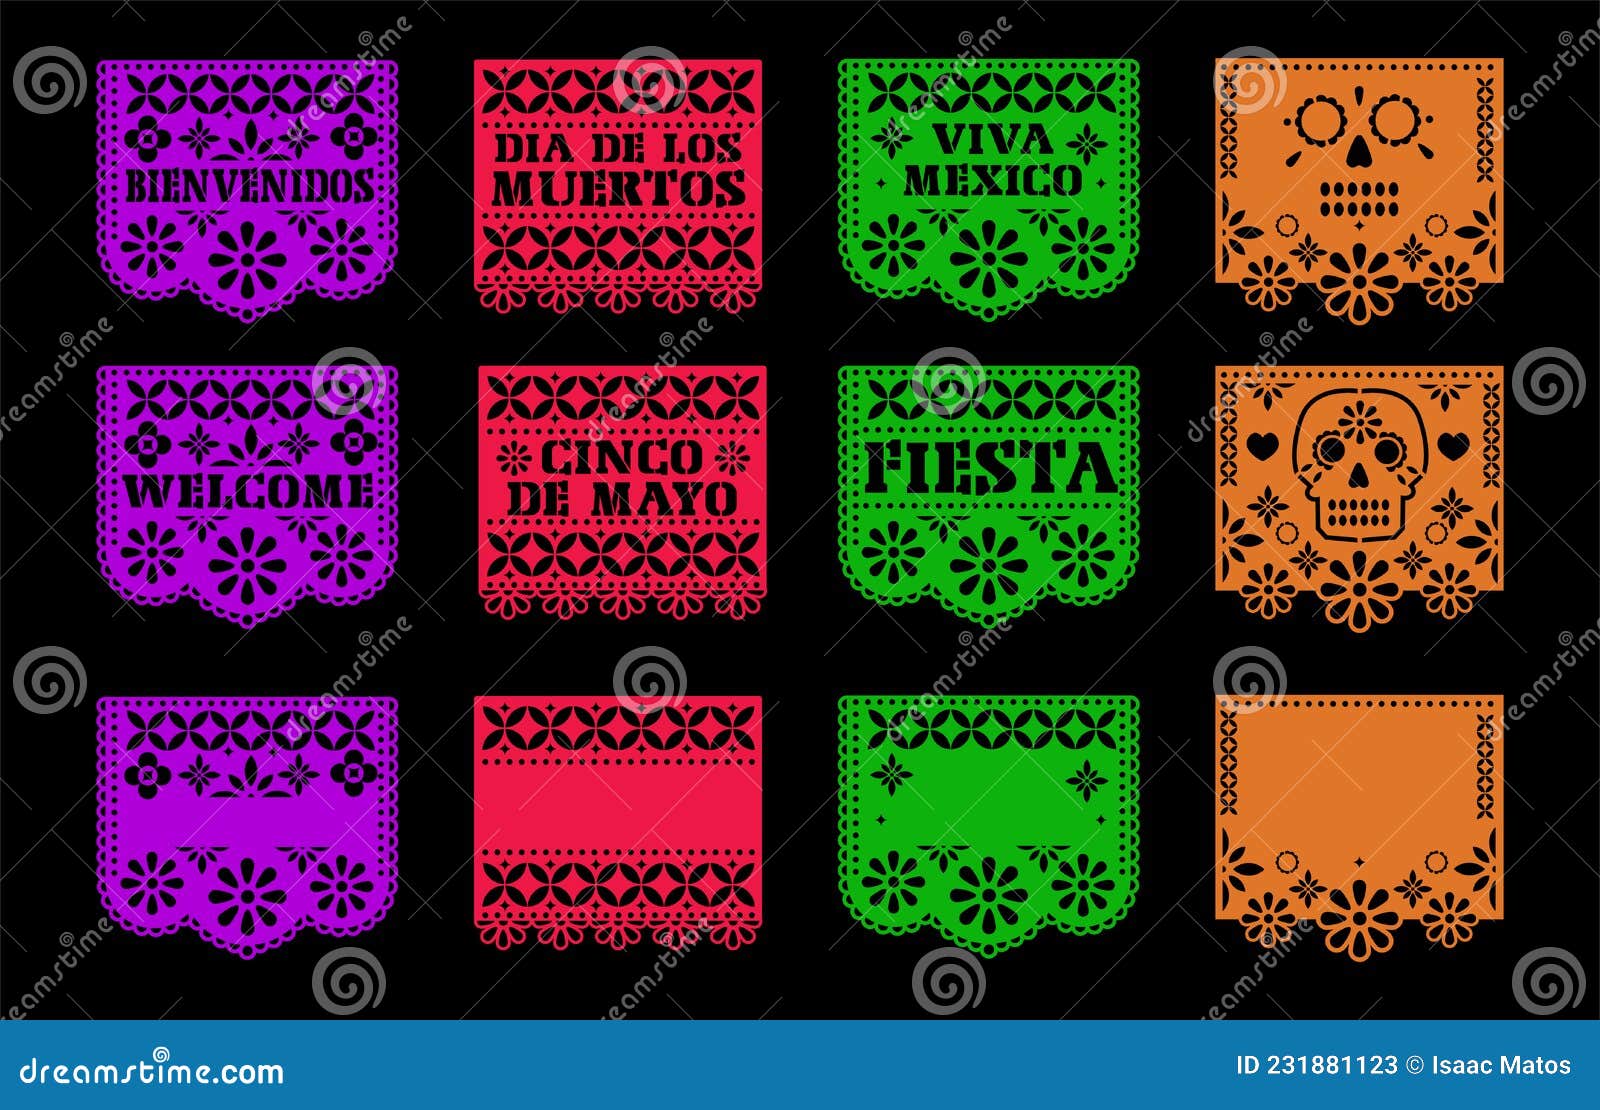 矢量传统墨西哥无尽边界剪纸旗 向量例证. 插画 包括有 设计, 当事人, 背包, 图象, 停止, 装饰 - 159140343